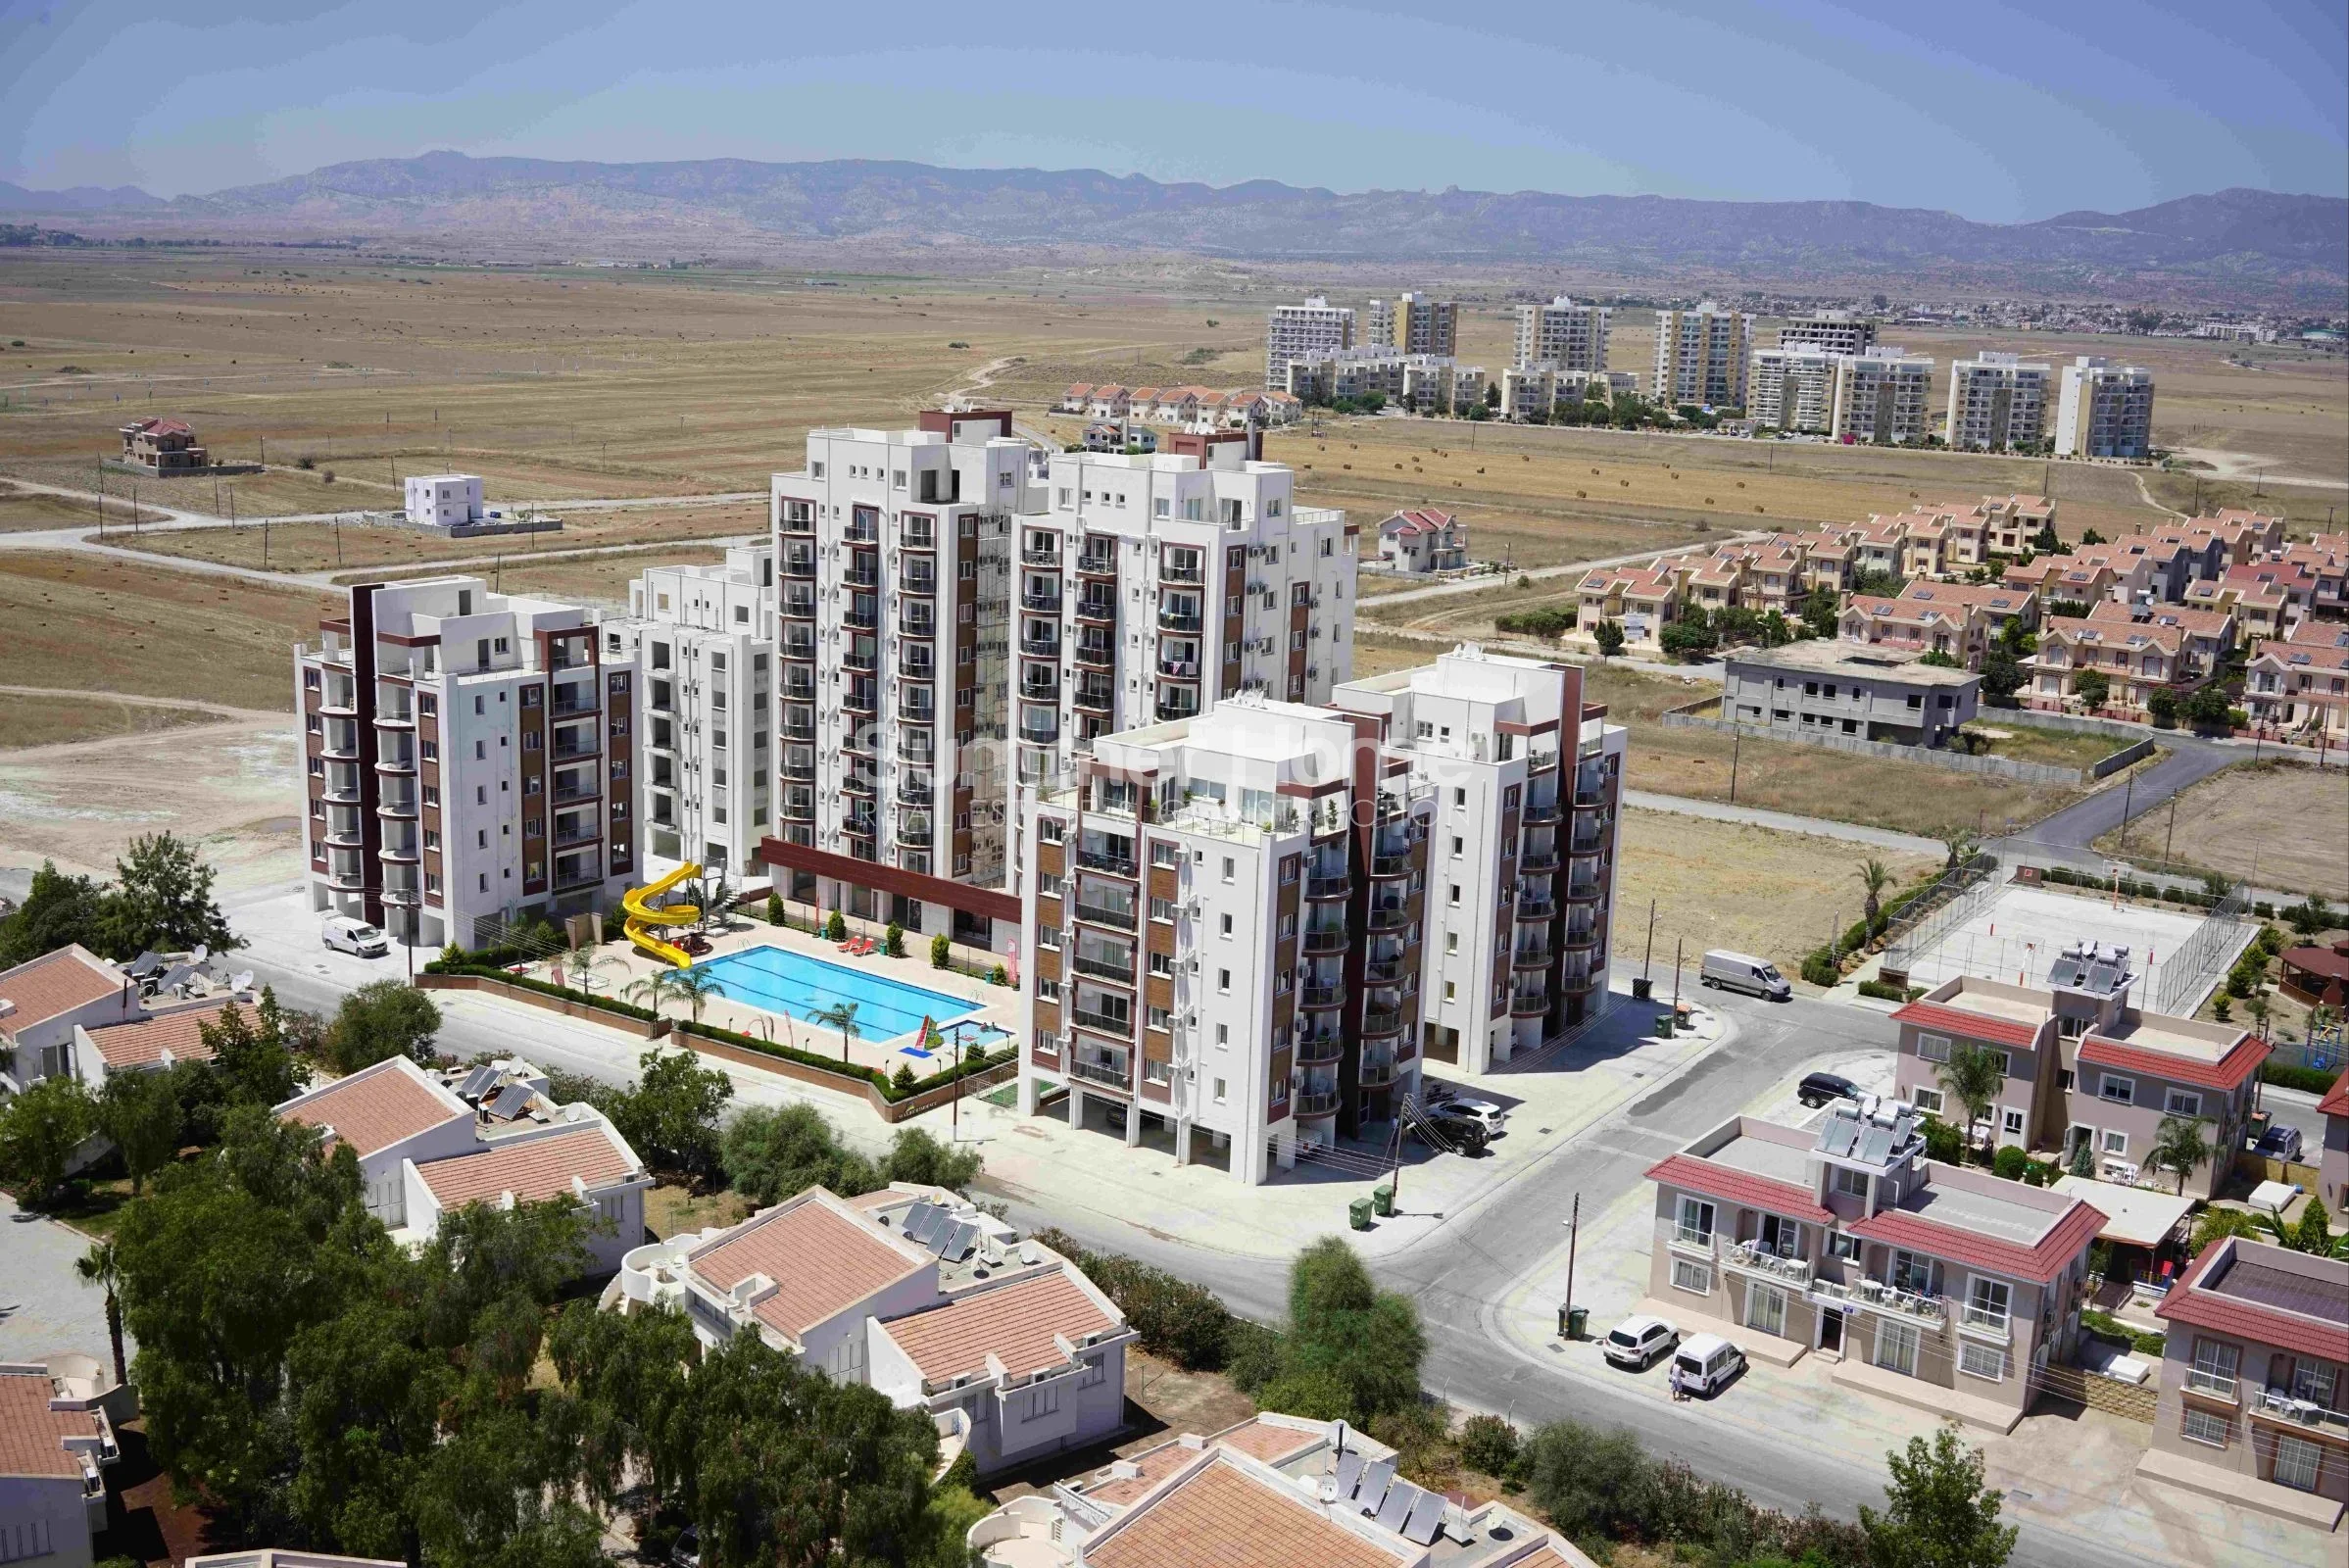 Betaalbare langs de kust gelegen appartementen met rustige locatie in Otukan, Cyprus Algemeen - 14